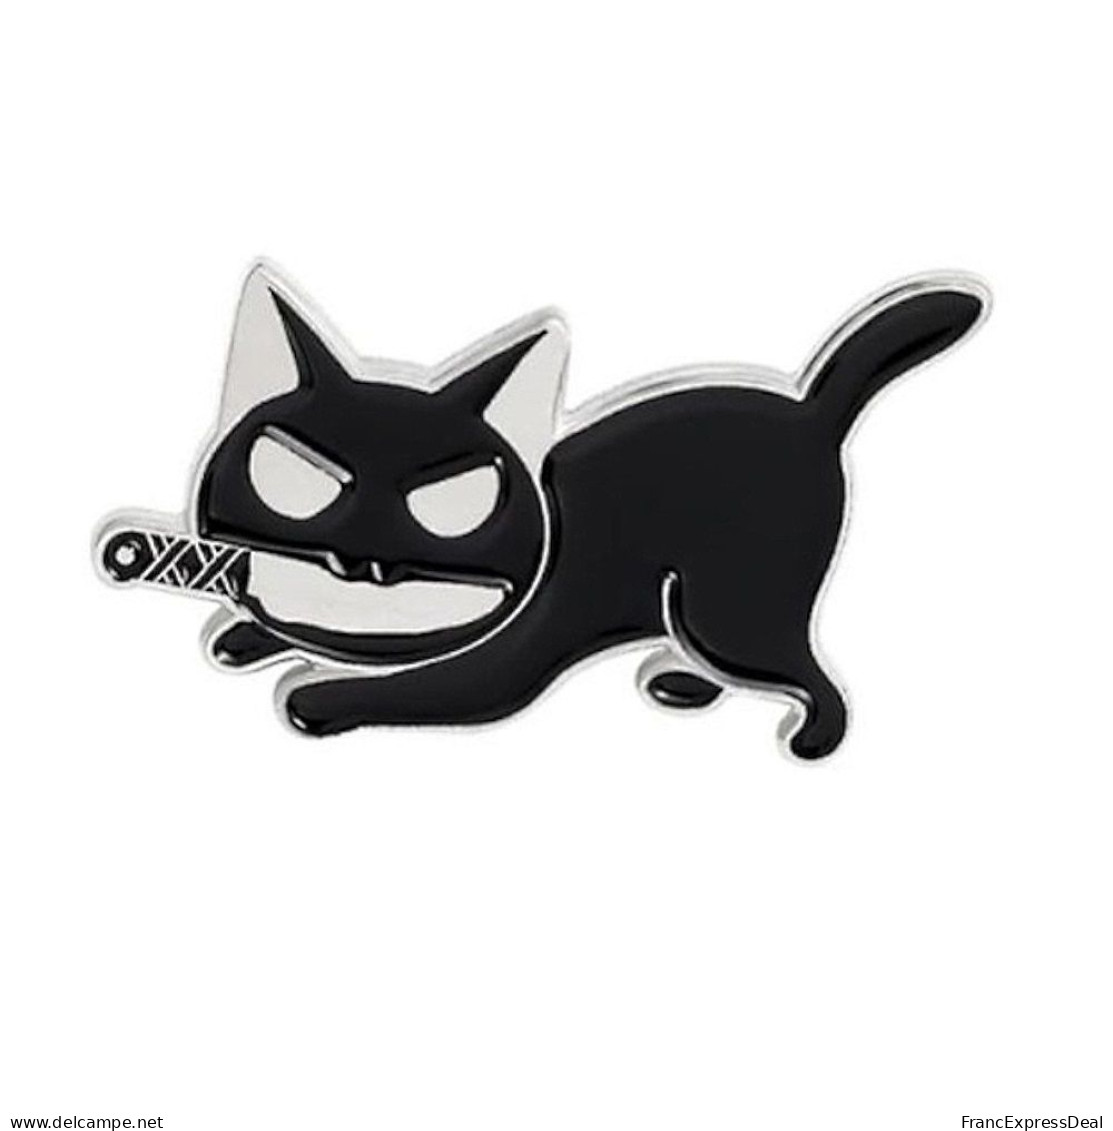 Lot de 3 Pin's NEUFS en métal Pins - Chat Noir avec un couteau Killer cat